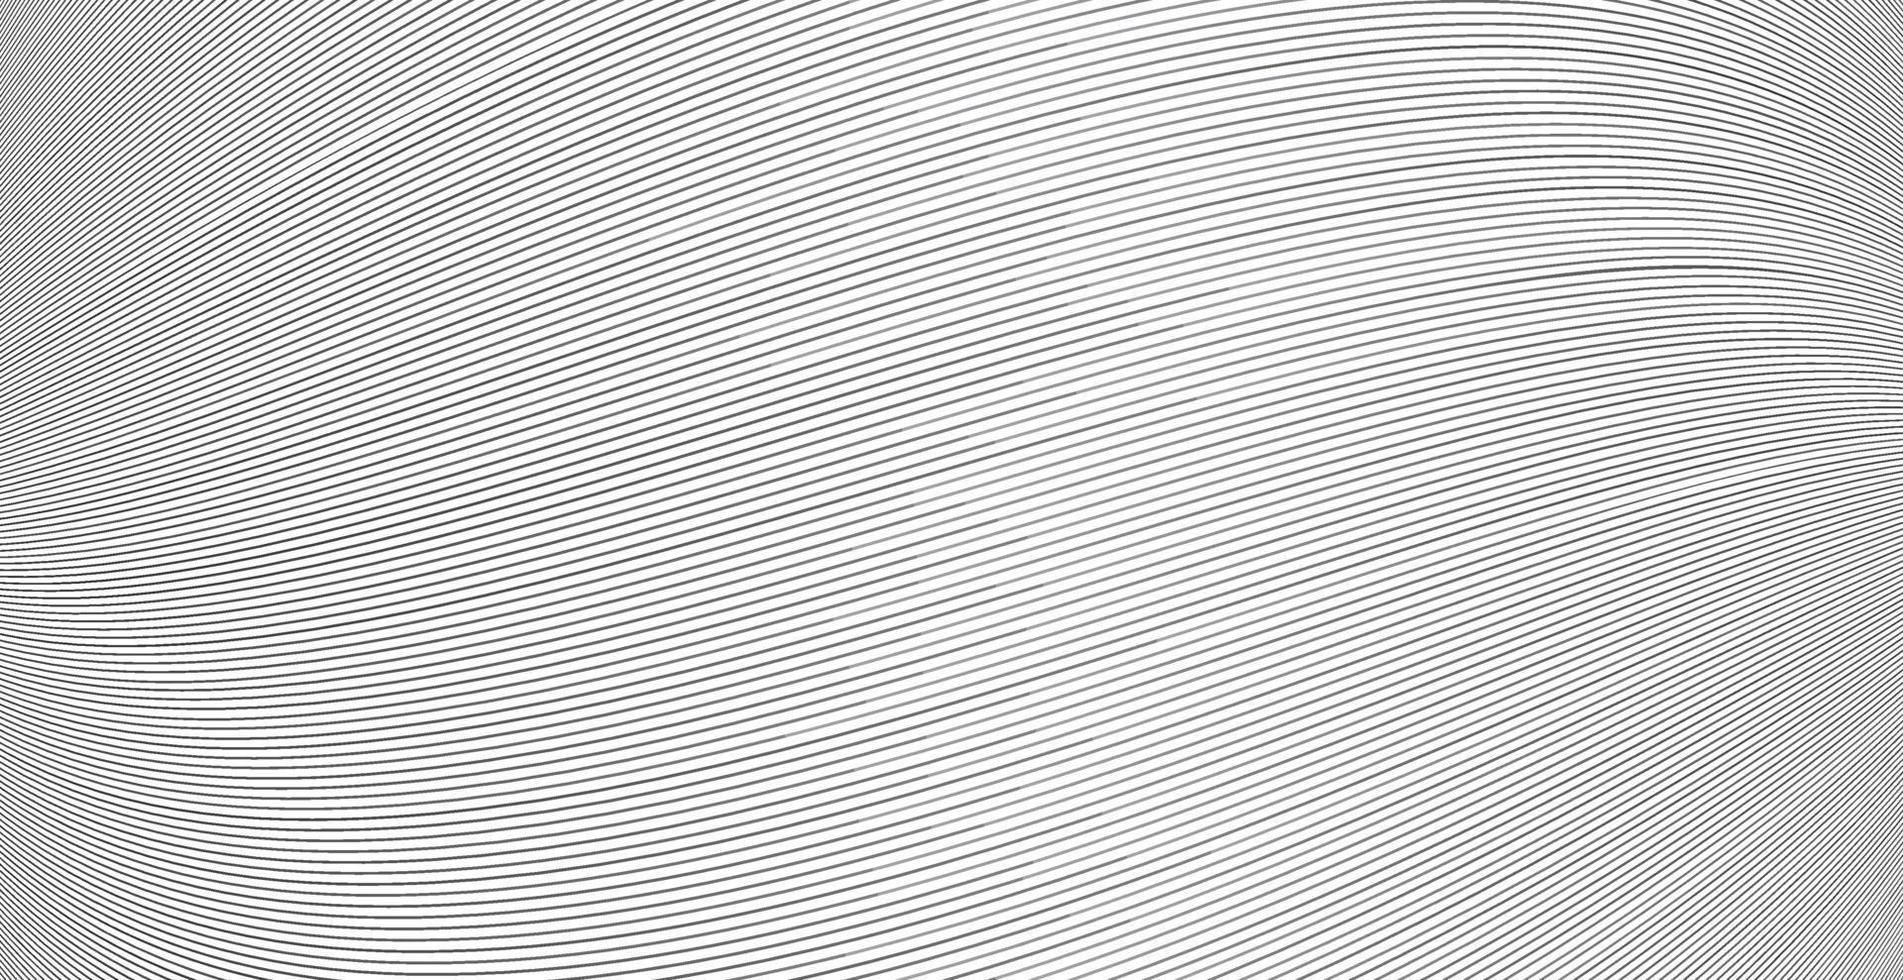 abstrait rayé diagonal déformé. vecteur courbe torsadée inclinée, texture de lignes ondulées. tout nouveau style pour la conception de votre entreprise.